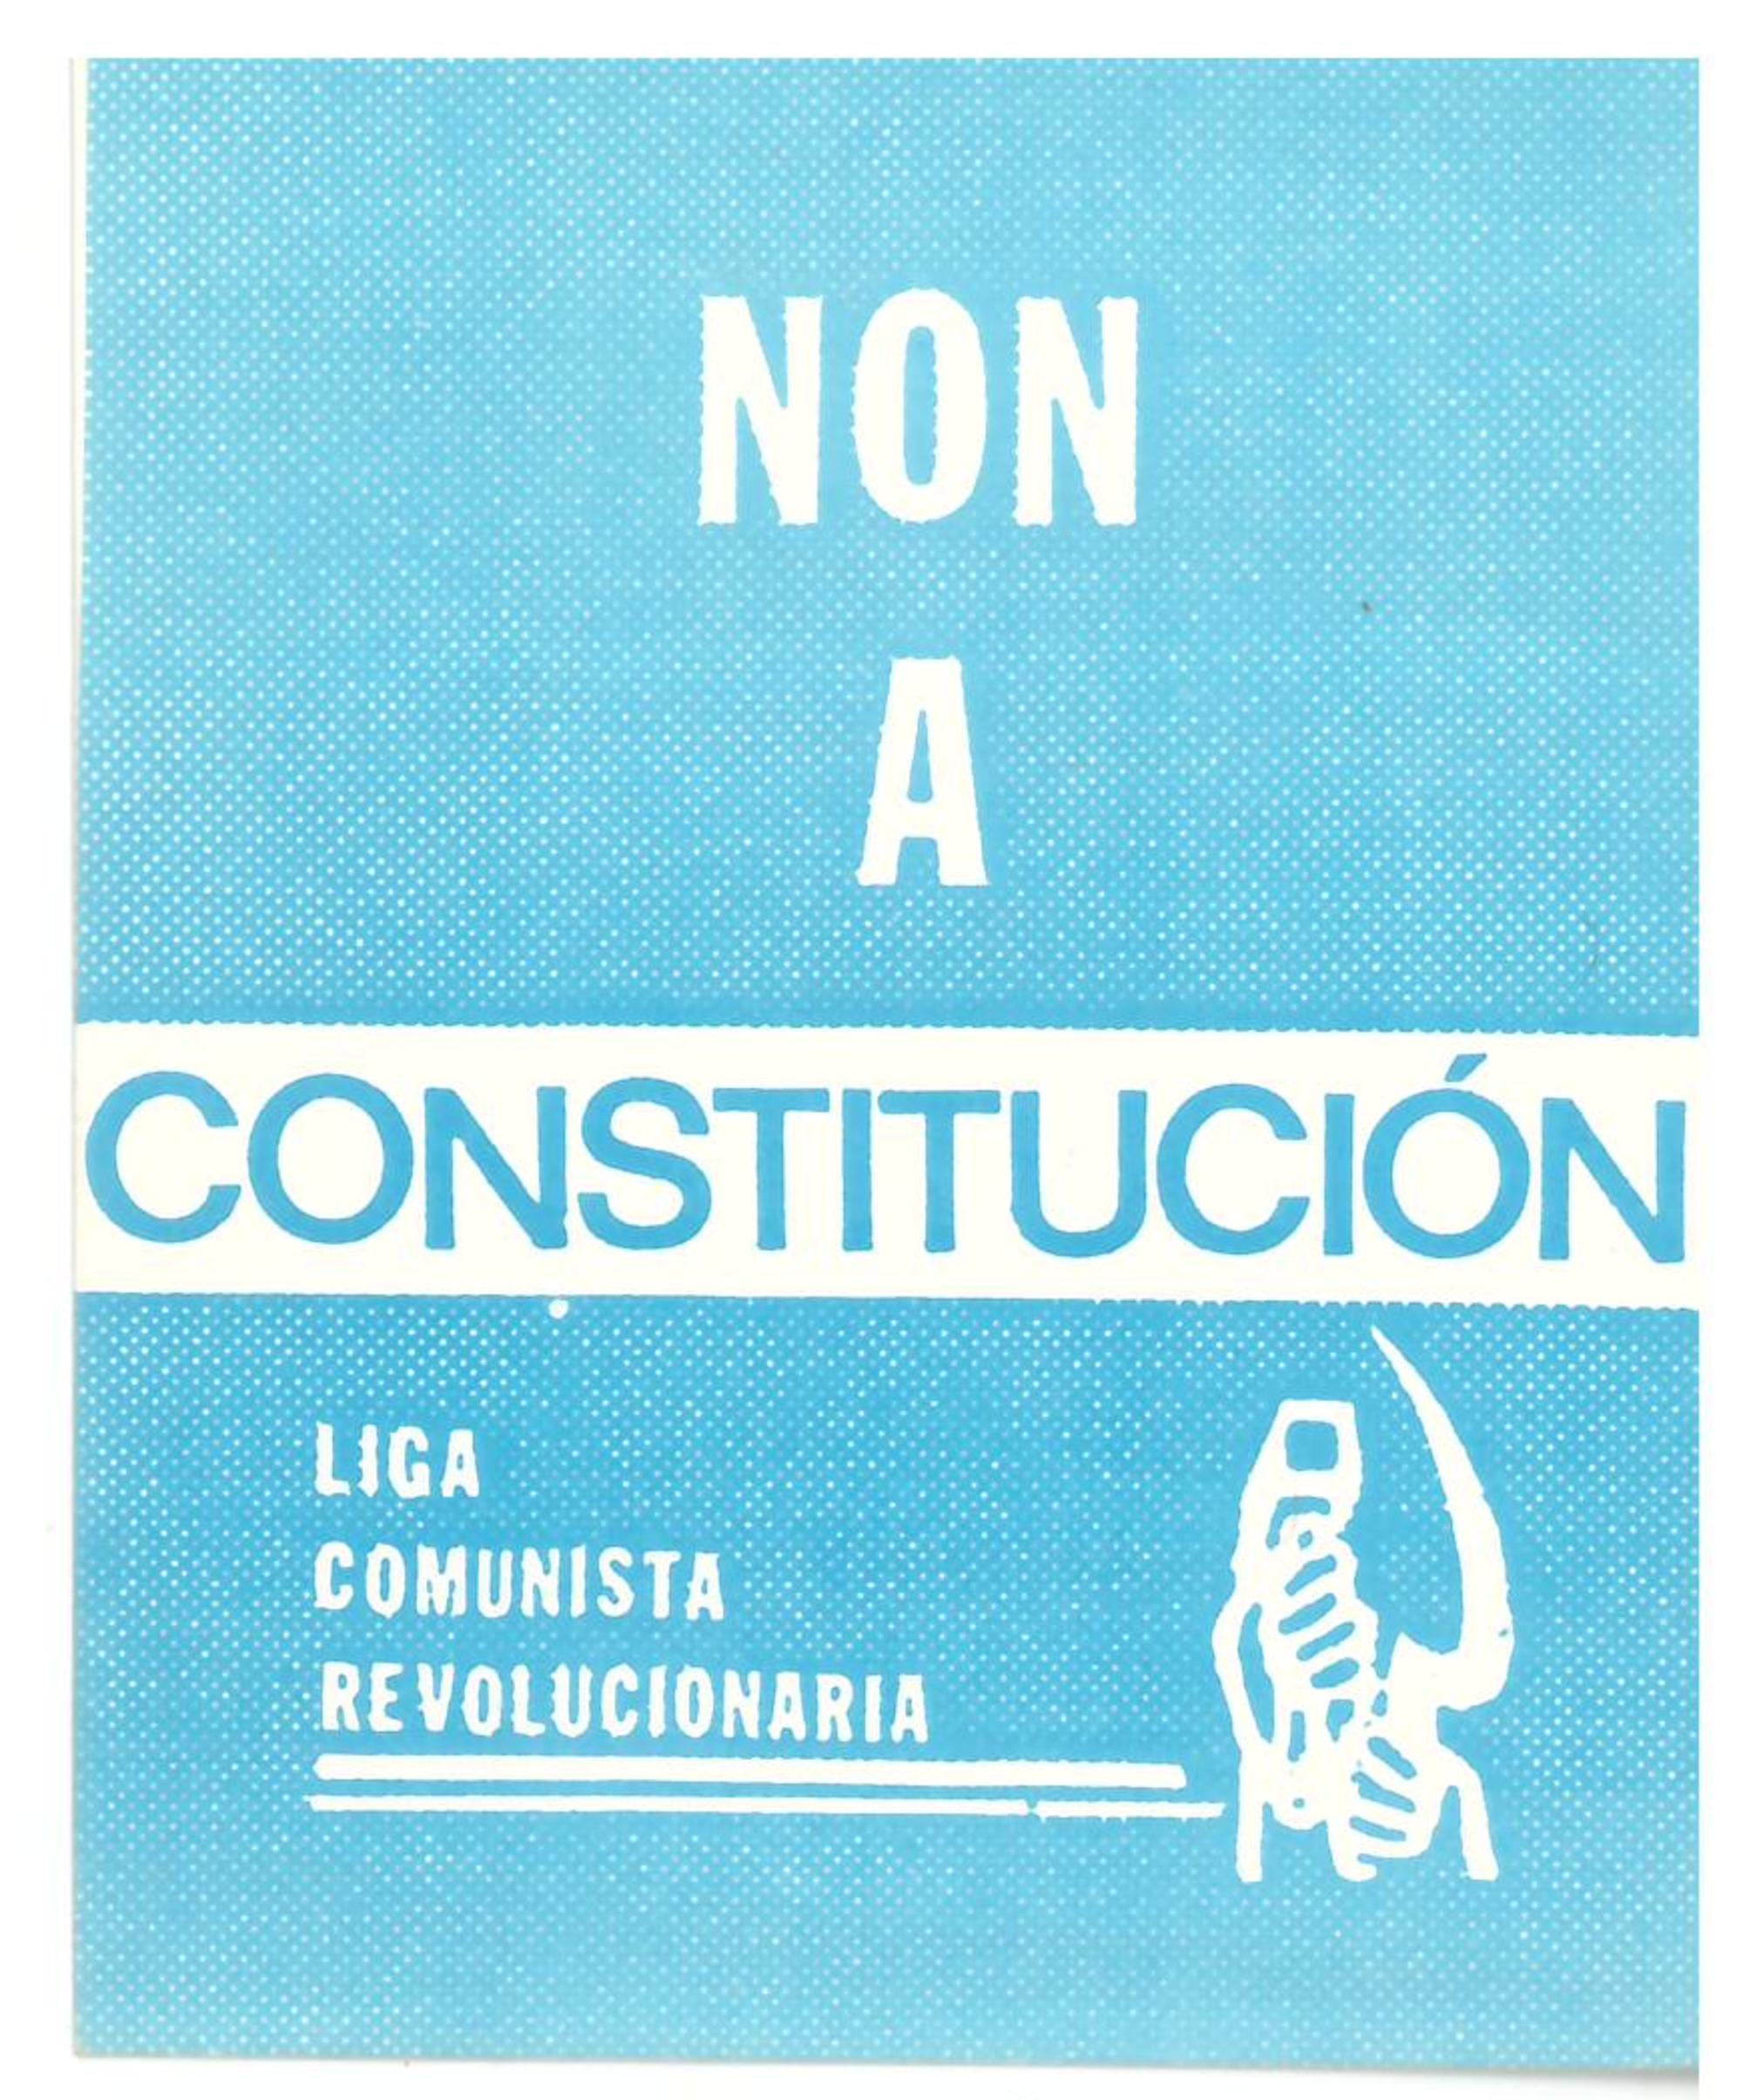 LCR non constitución do 1978